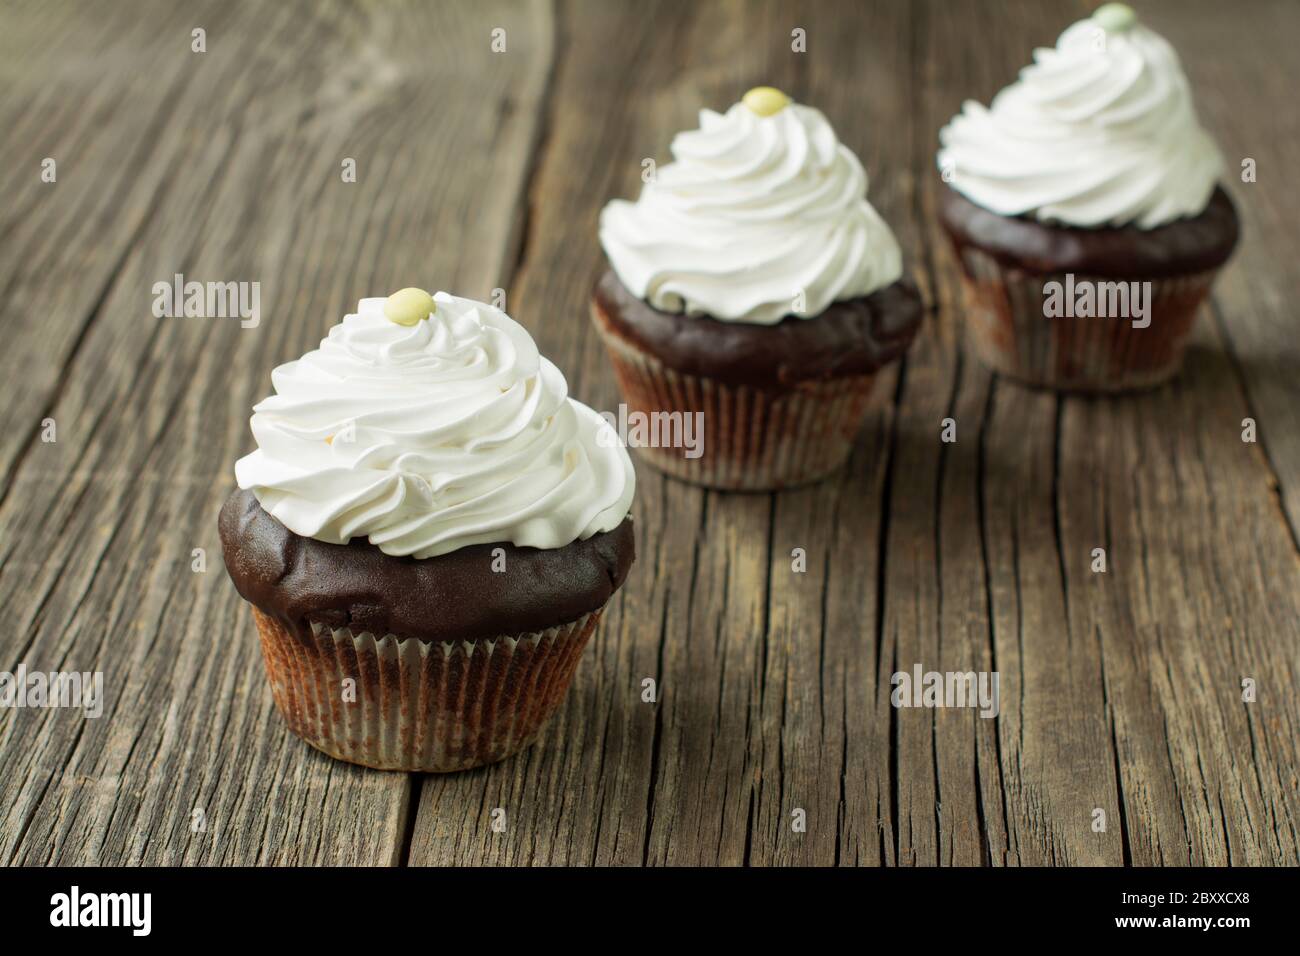 Schokolade Cupcakes in Papier Patty Fällen, gekrönt mit Schlagsahne und mit Knopf-förmigen Süßigkeiten, auf den rustikalen Holzplanken verziert. Stockfoto